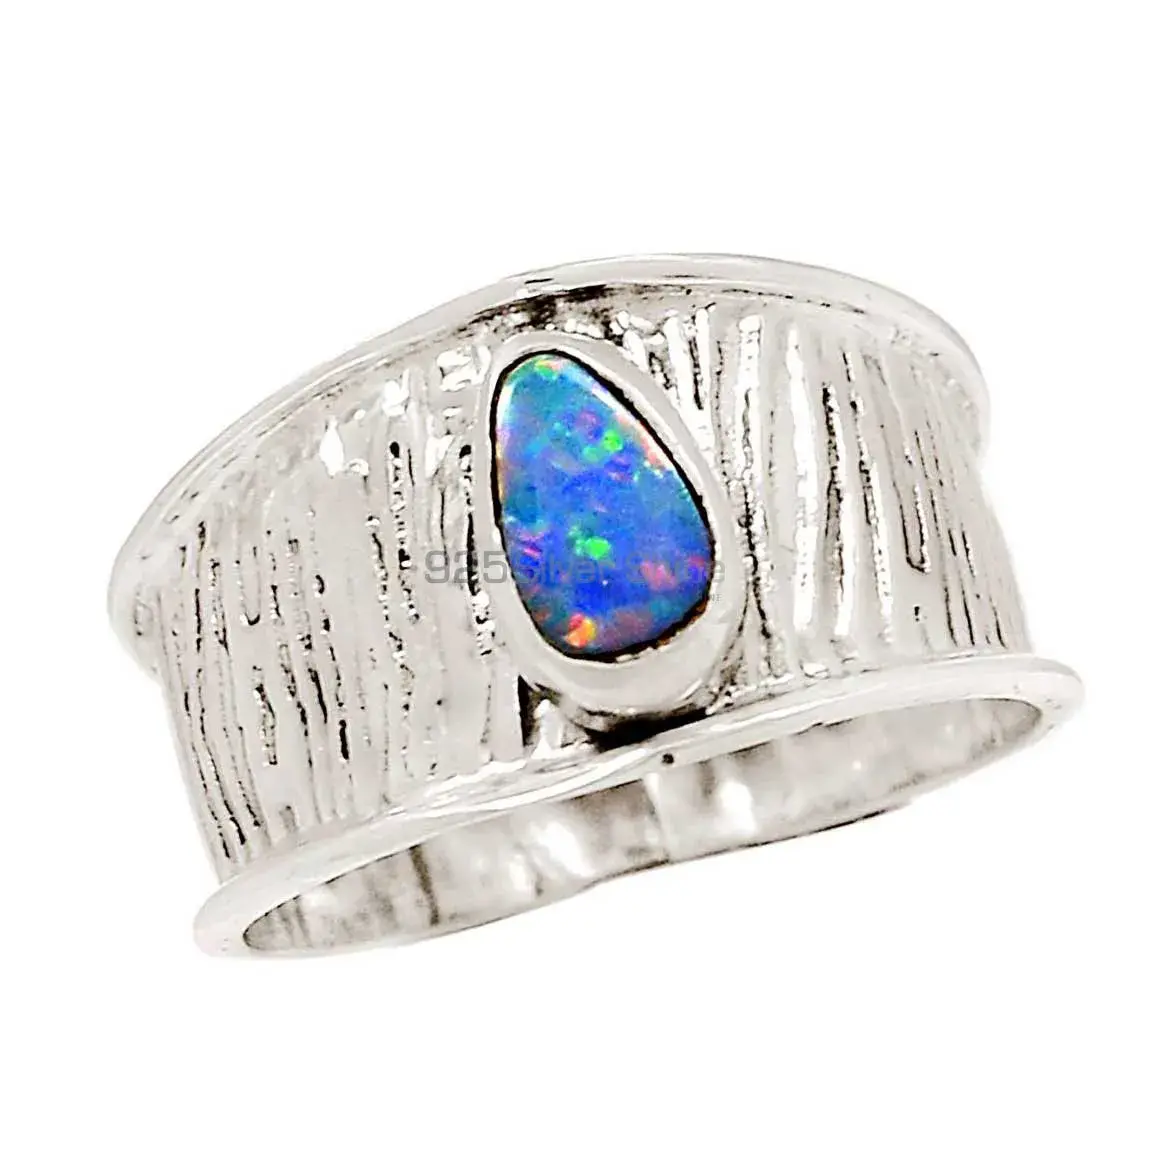 Opal Stone Rings In Sterling Silver Fine Jewelry Designers 925SR2328_0